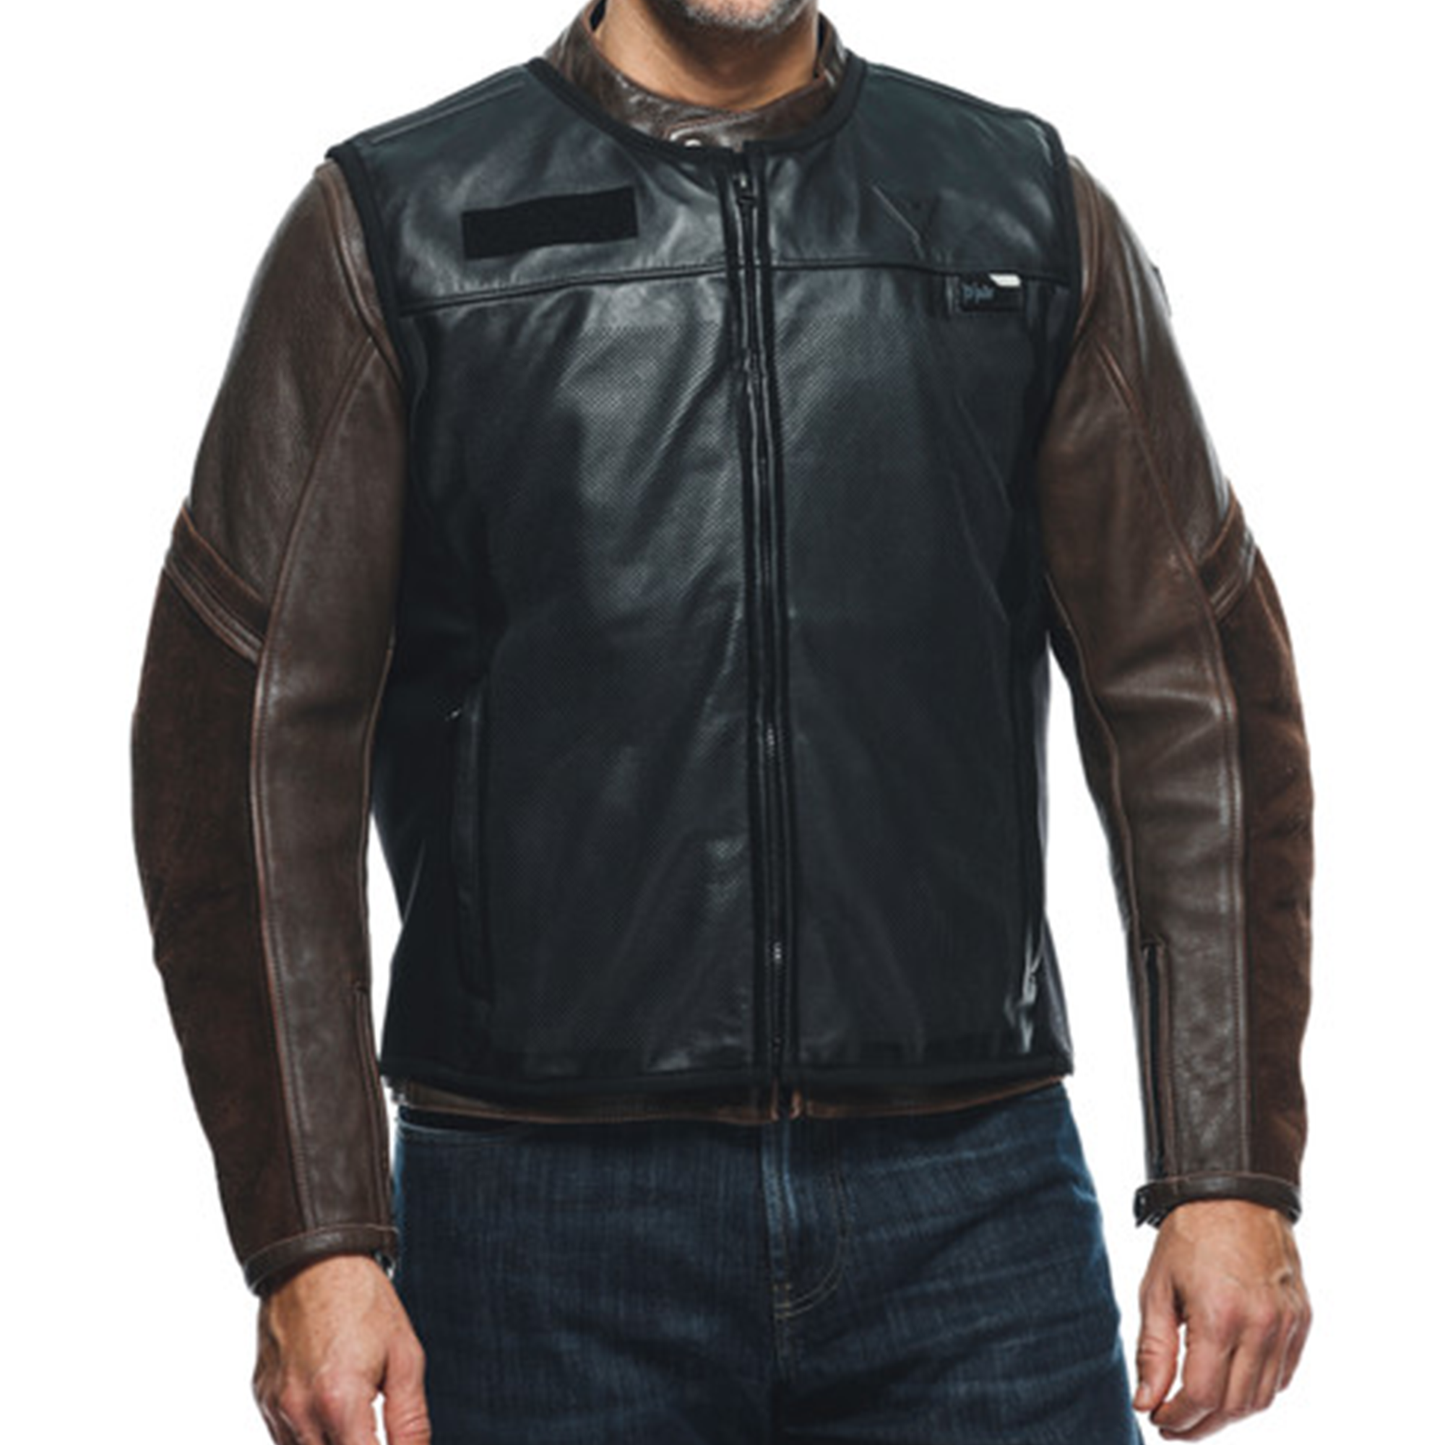 Dainese Smart Jacket Leather - Black (001)